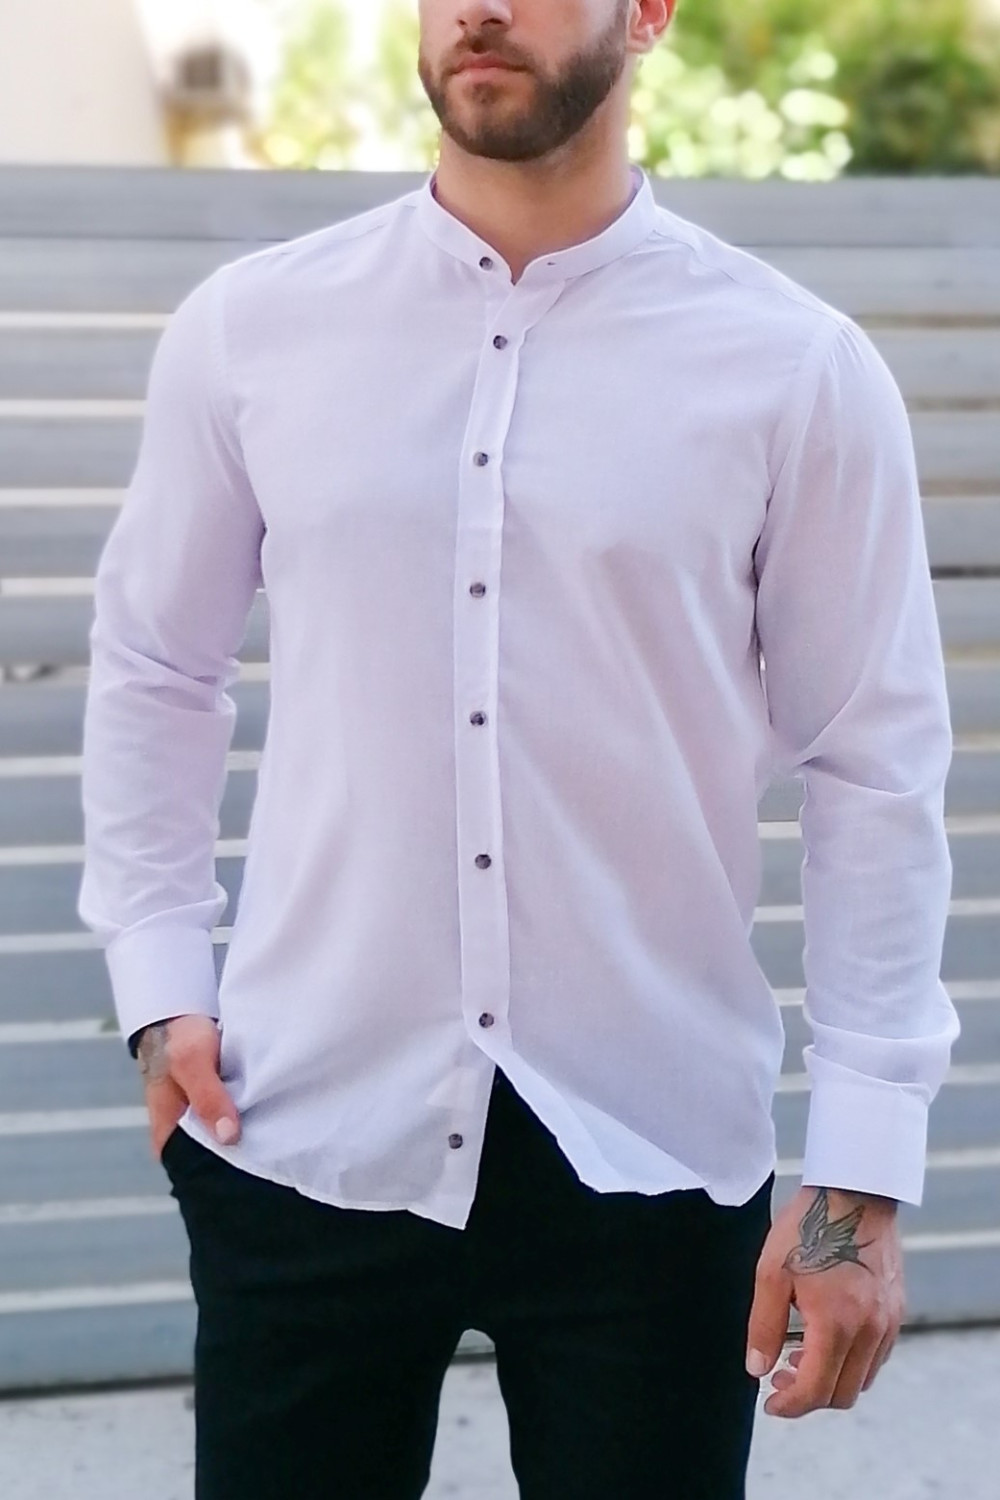 Ανδρικό λευκό λινό πουκάμισο με μάο γιακά 313024B